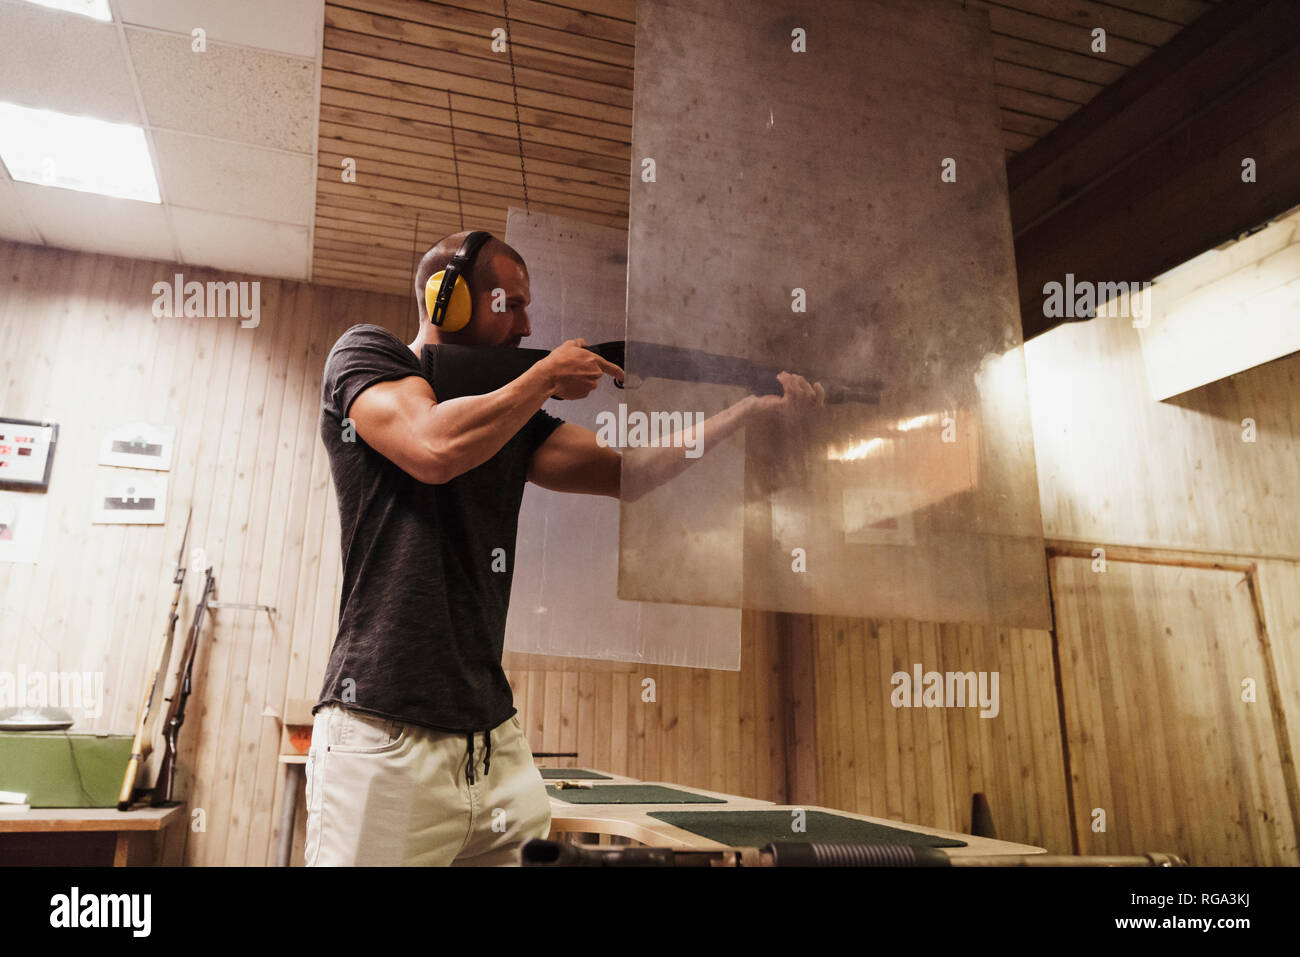 Uomo che ha di mira con un fucile in una piscina poligono di tiro Foto Stock